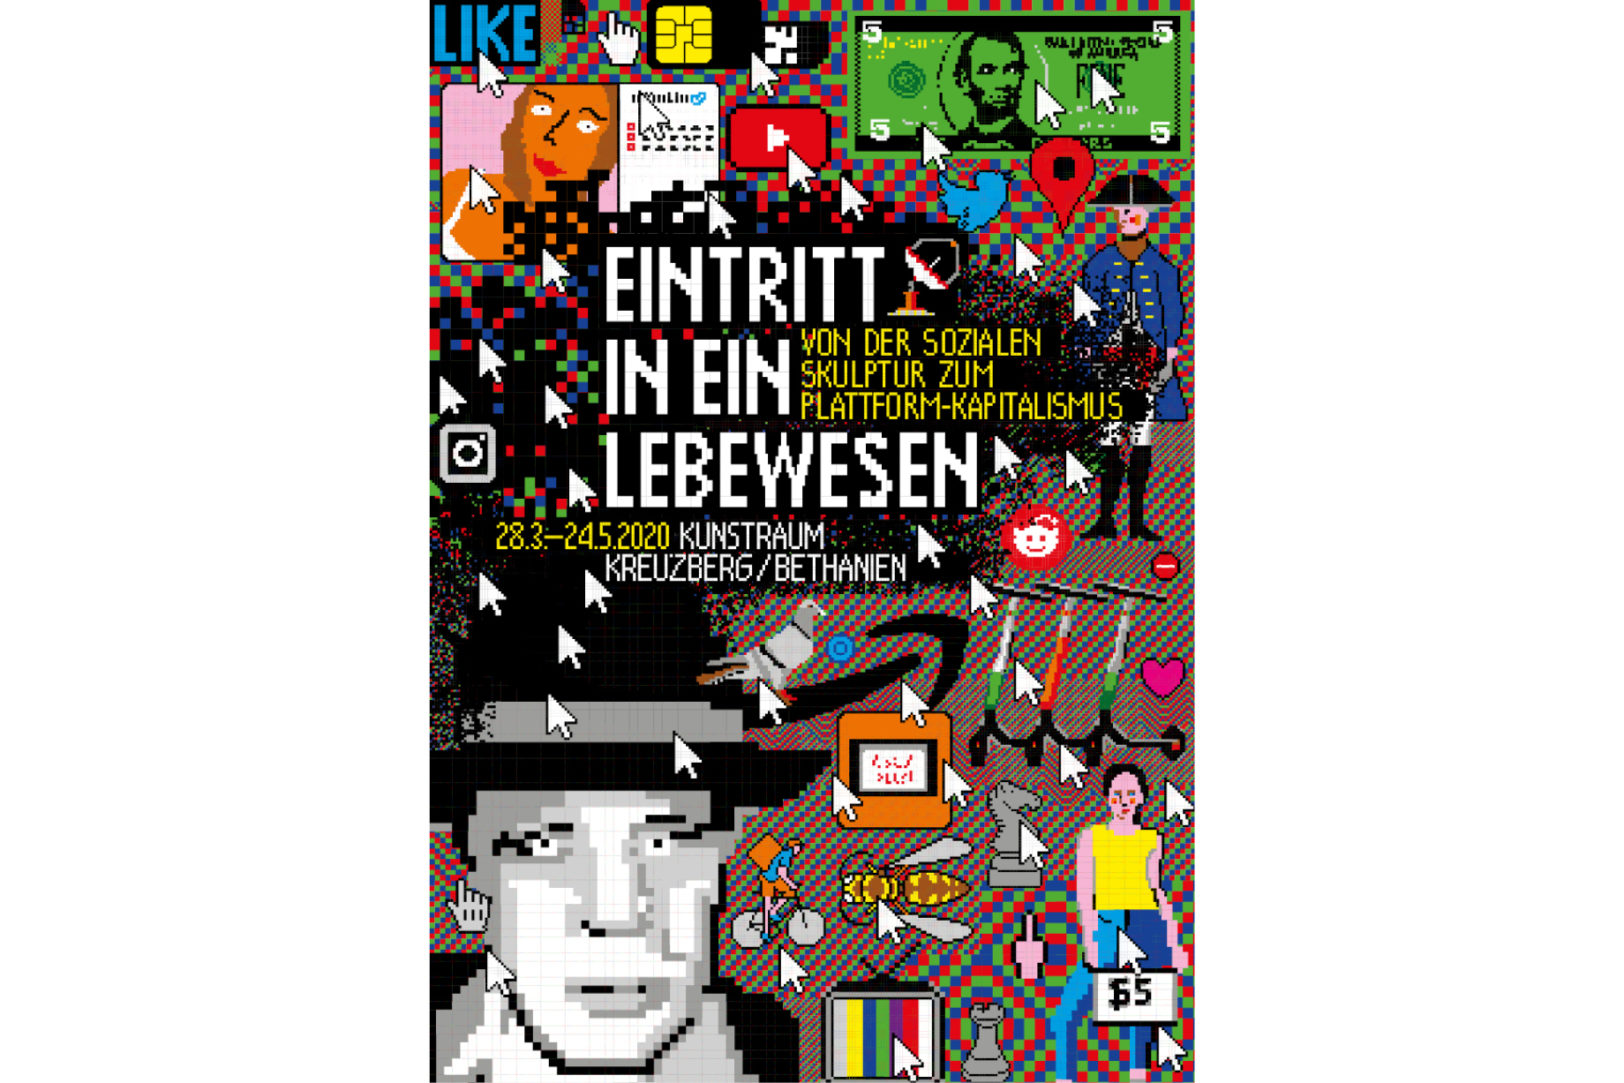 https://e-o-t.de/wordpress/wp-content/uploads/2020/03/Lebewesen-Poster-eot.jpg